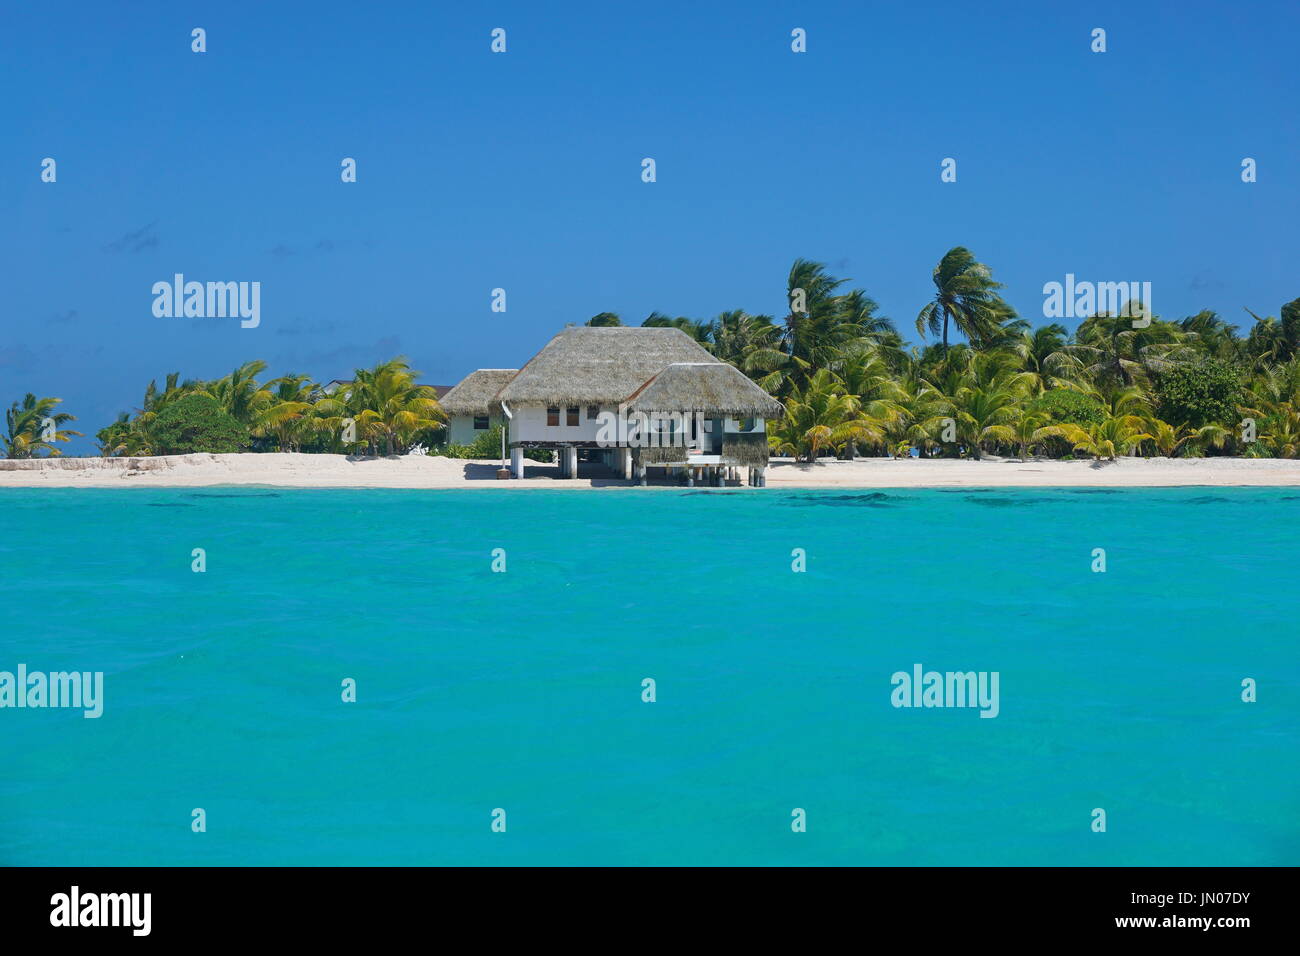 Costa con una casa de playa tropical y el agua color turquesa de la laguna interior del atolón Tikehau, Tuamotus archipiélago, Polinesia francesa, Océano Pacífico Foto de stock